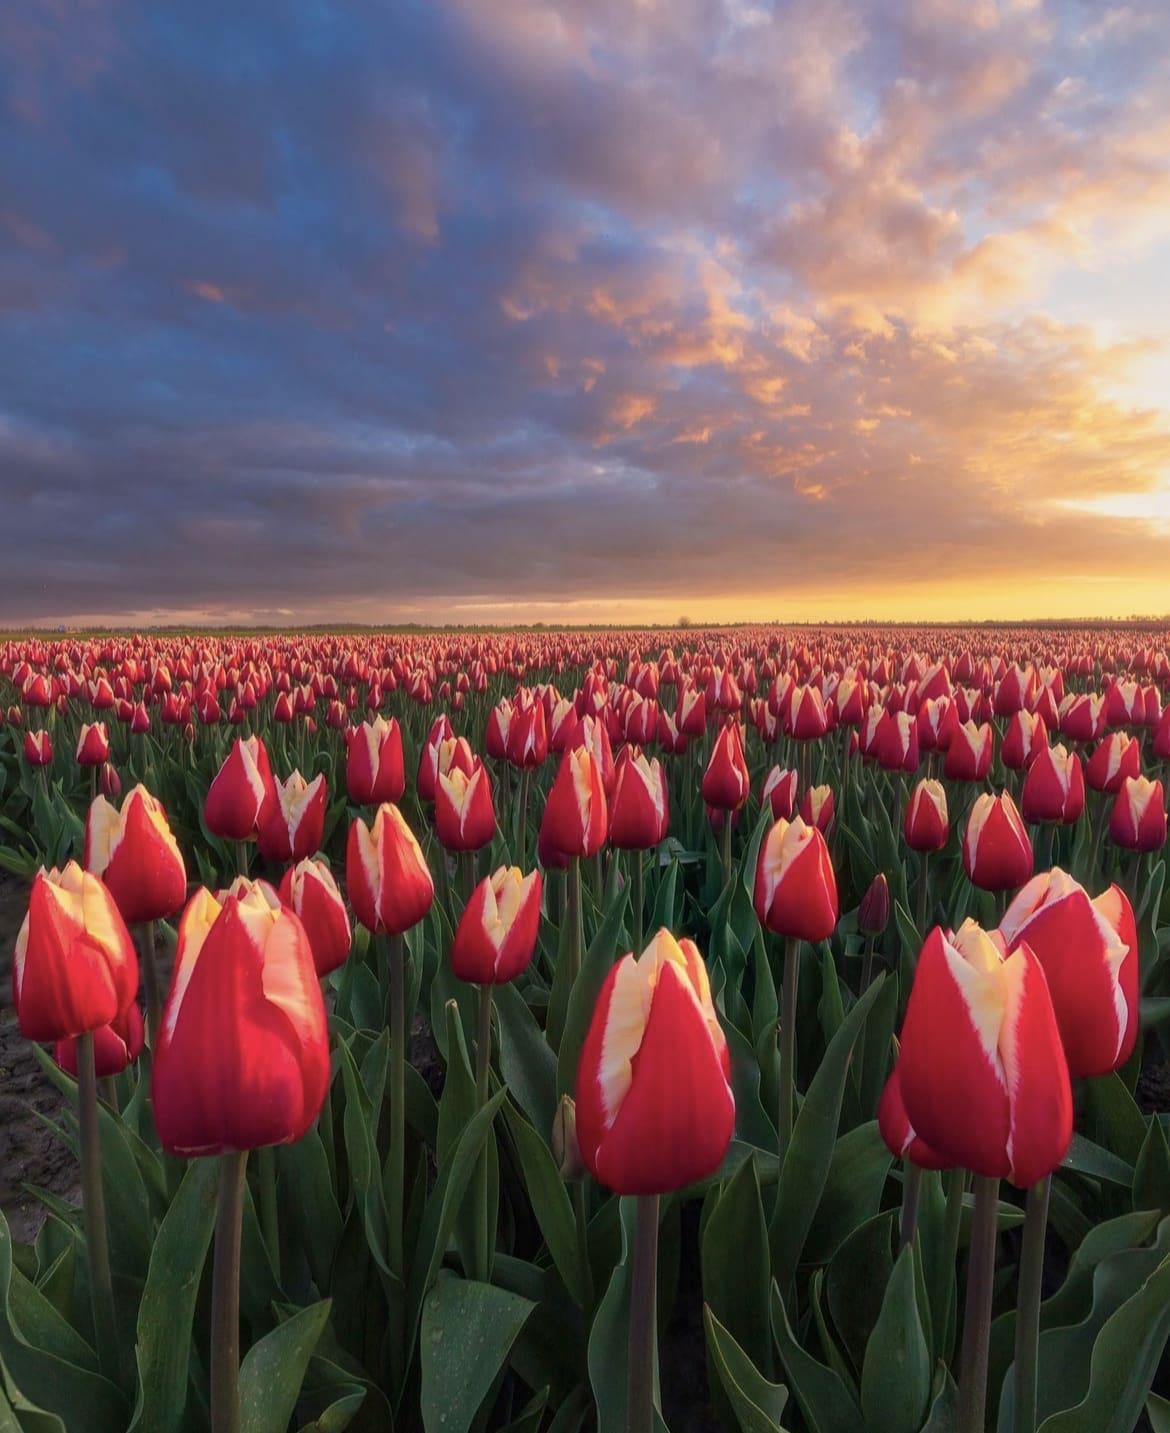 Zaanse Schans Tulip Gardens - Tulip Gardens Near Amsterdam